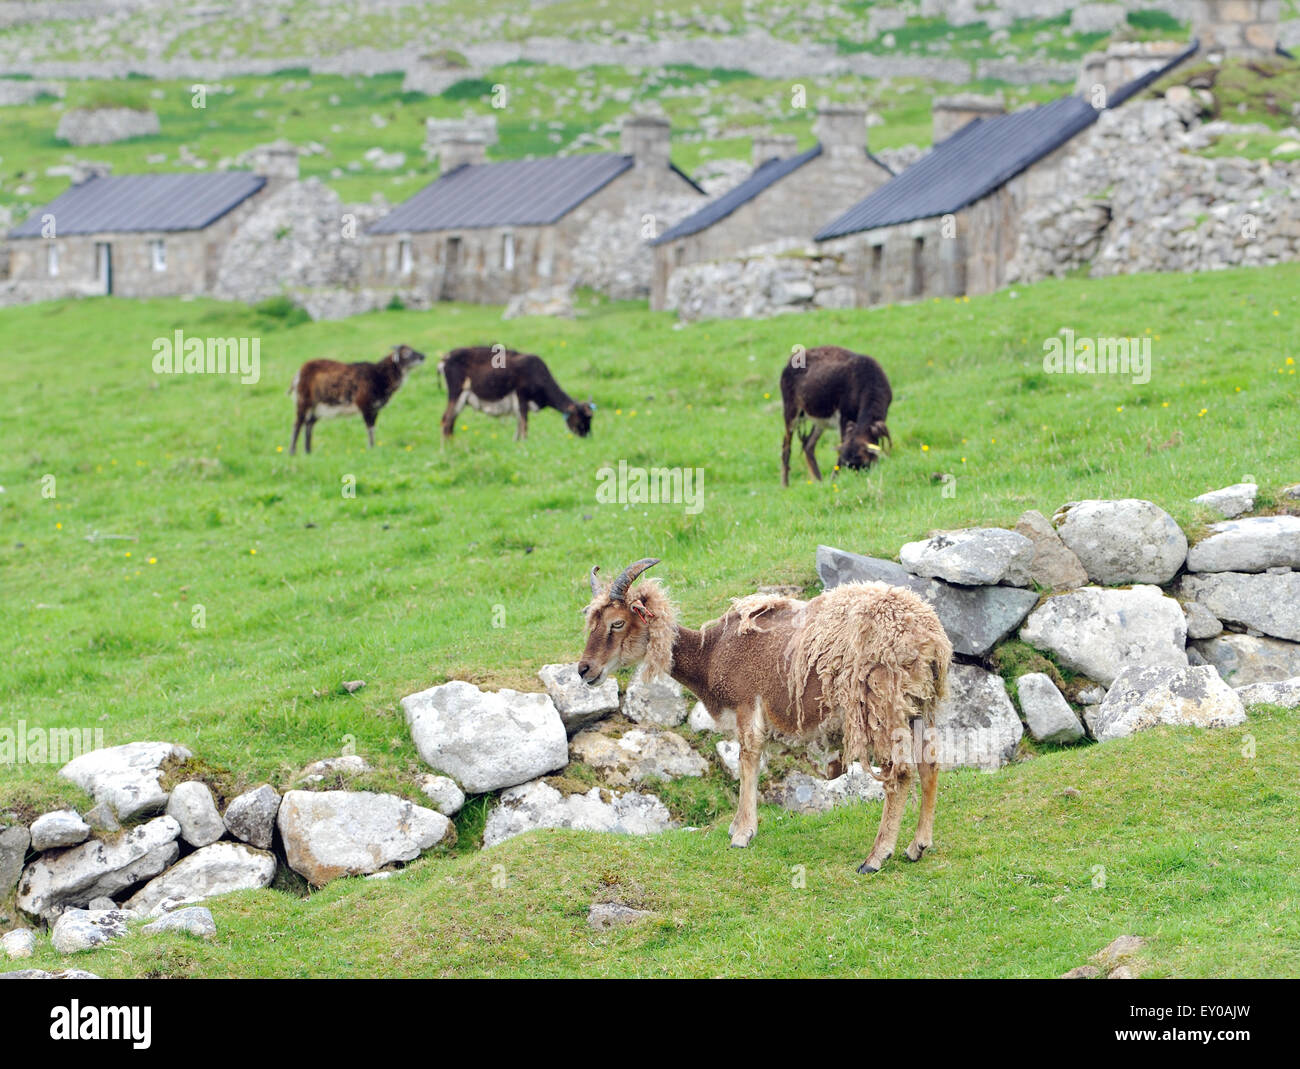 Moutons Soay sont une race d'sheeo (Ovis aries) est descendu dans la population de moutons sur l'île de Soay . Banque D'Images